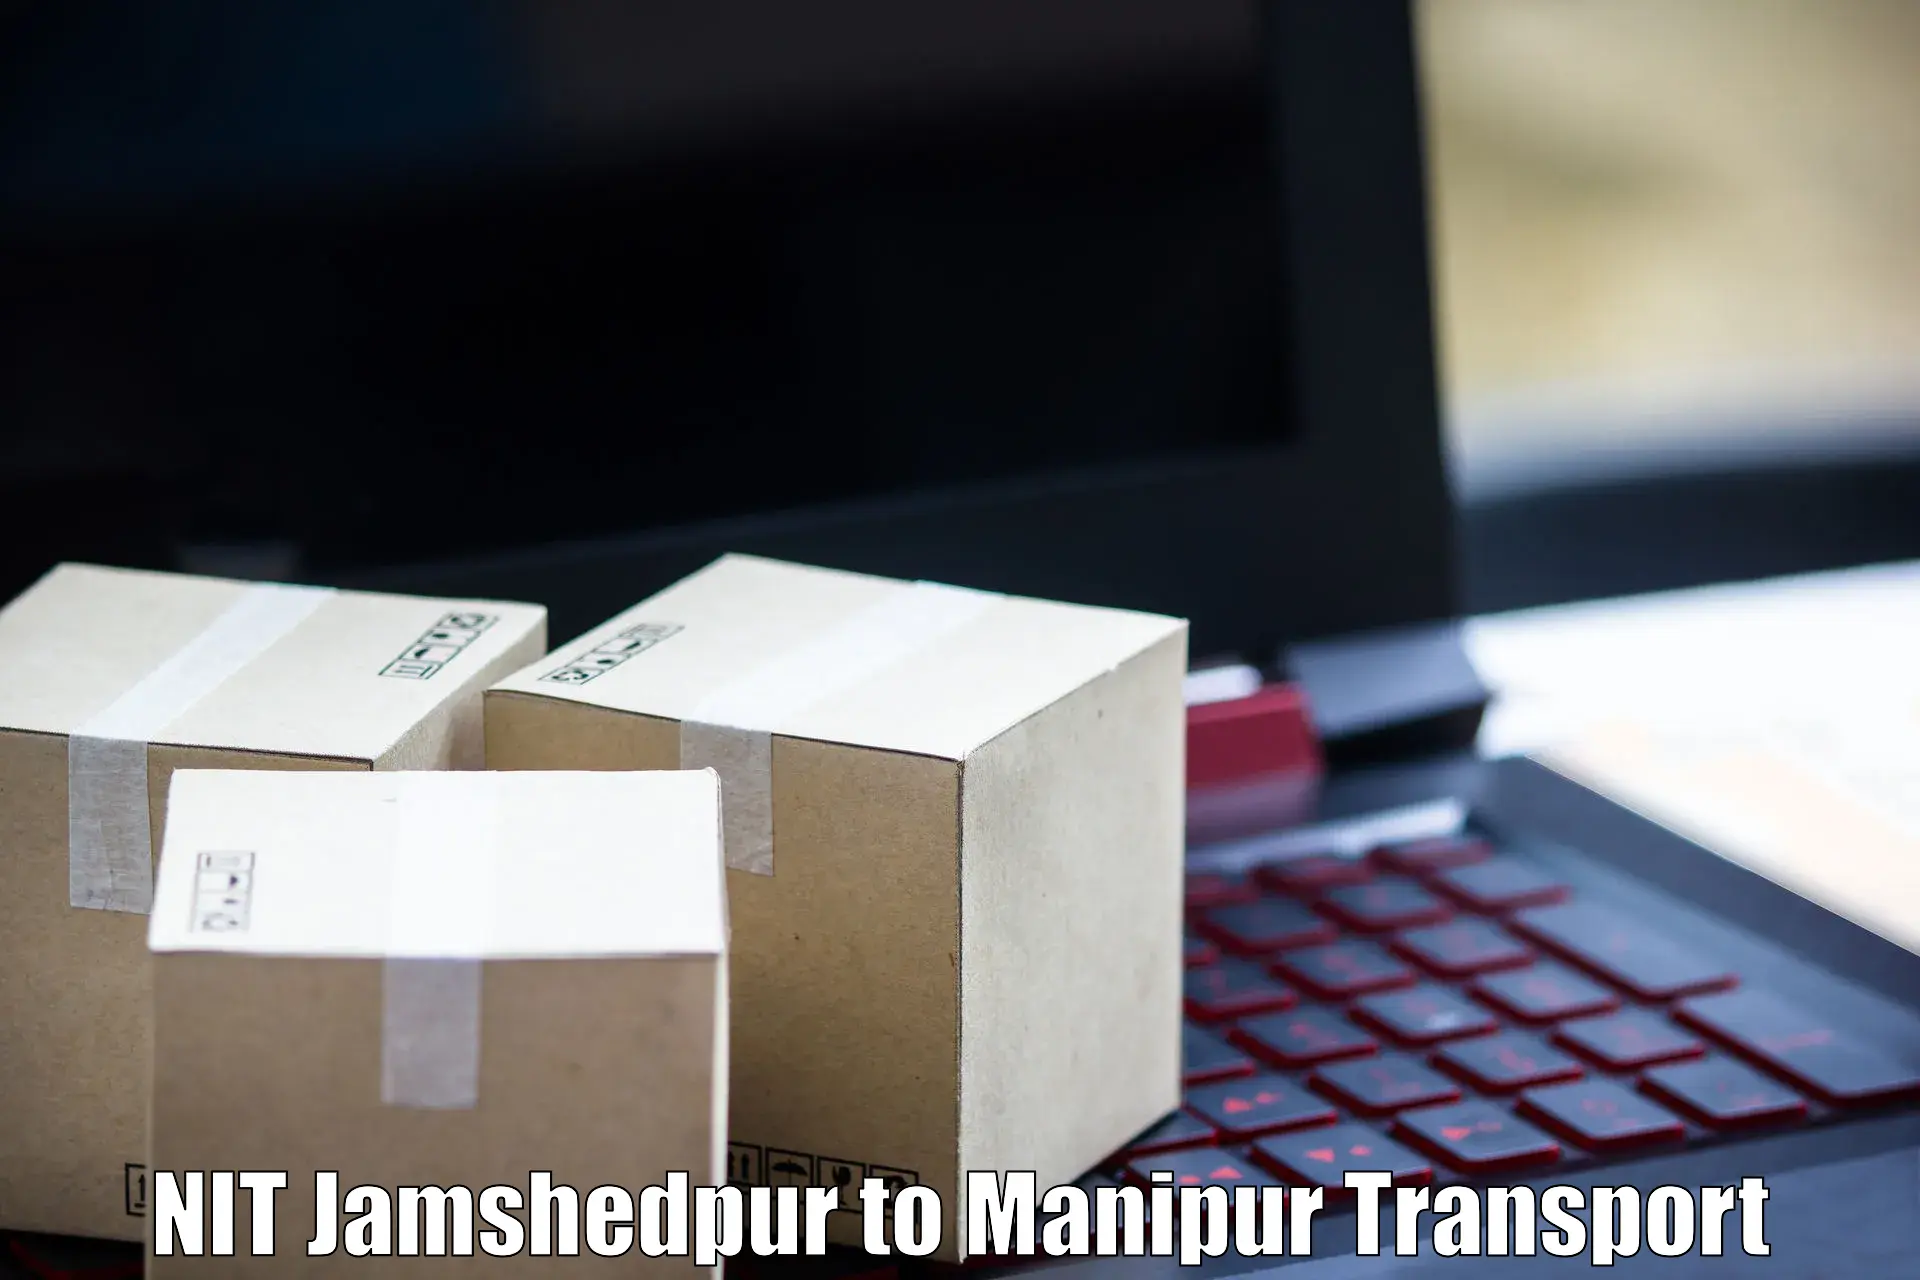 Land transport services NIT Jamshedpur to Manipur